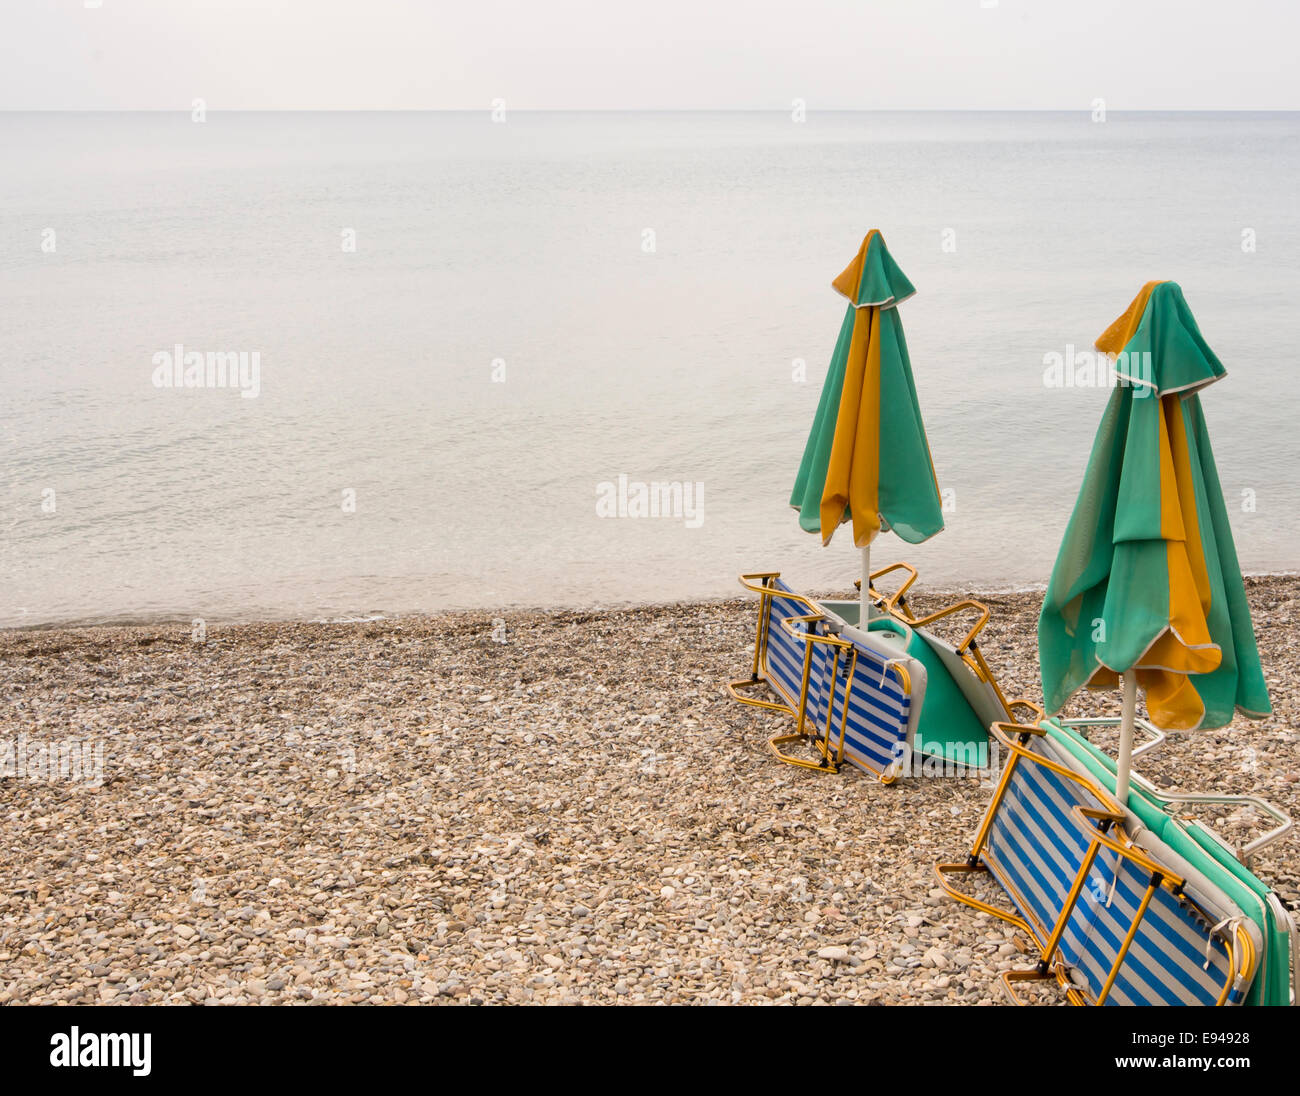 Düster Tag am Strand, Sonnenliegen, geschlossene Sonnenschirme, grauen Himmel leer niemand spielen im Wasser oder mit Kieselsteinen, Samos Griechenland Stockfoto